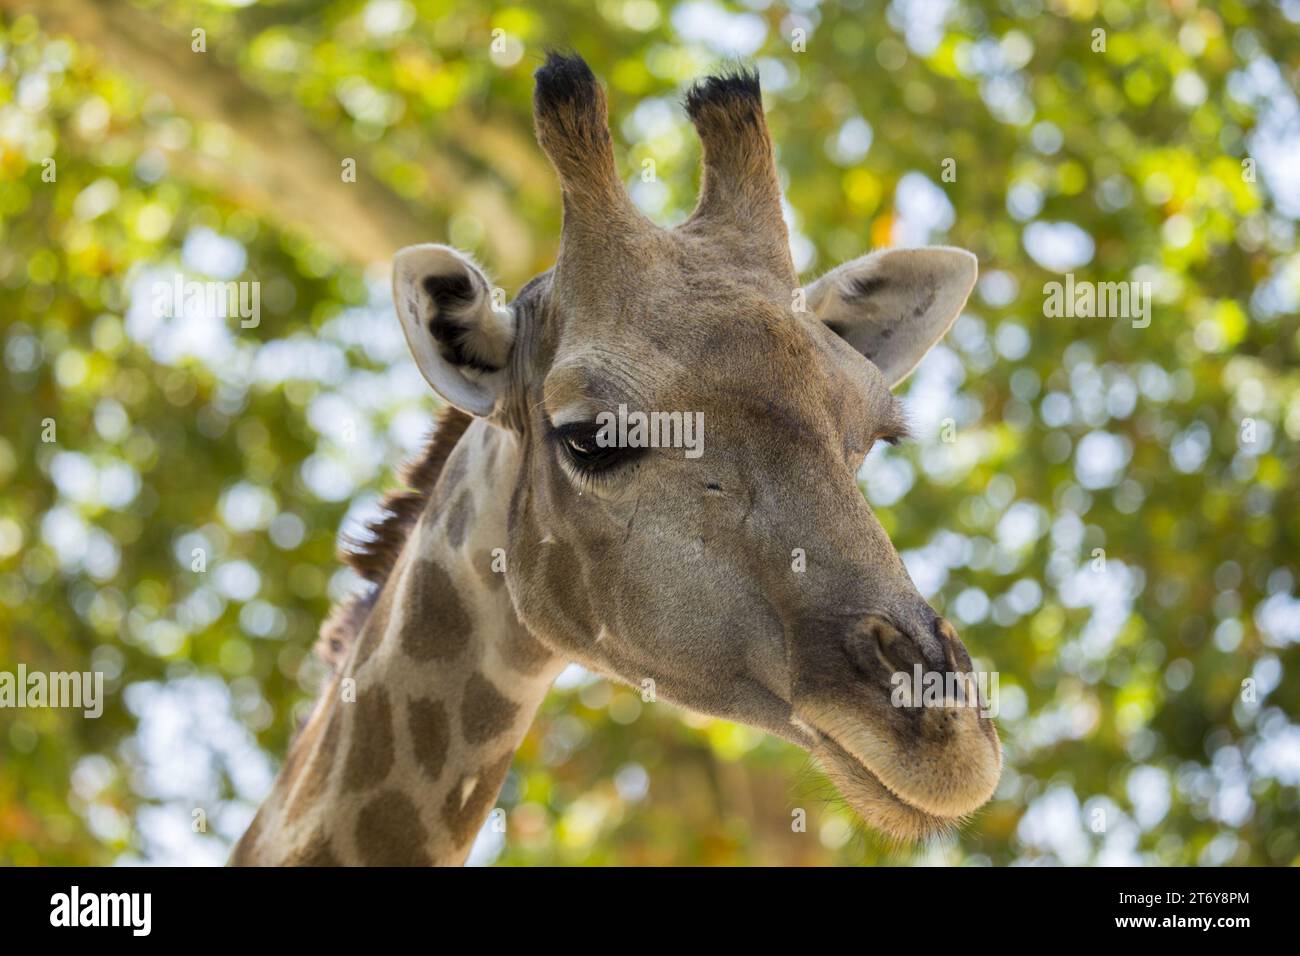 Anmutige Giraffe (Giraffa camelopardalis), gefangen in ihrem afrikanischen Savannenhabitat. Bekannt für seinen legendären langen Ausschnitt und den charakteristischen gepunkteten Mantel. Stockfoto